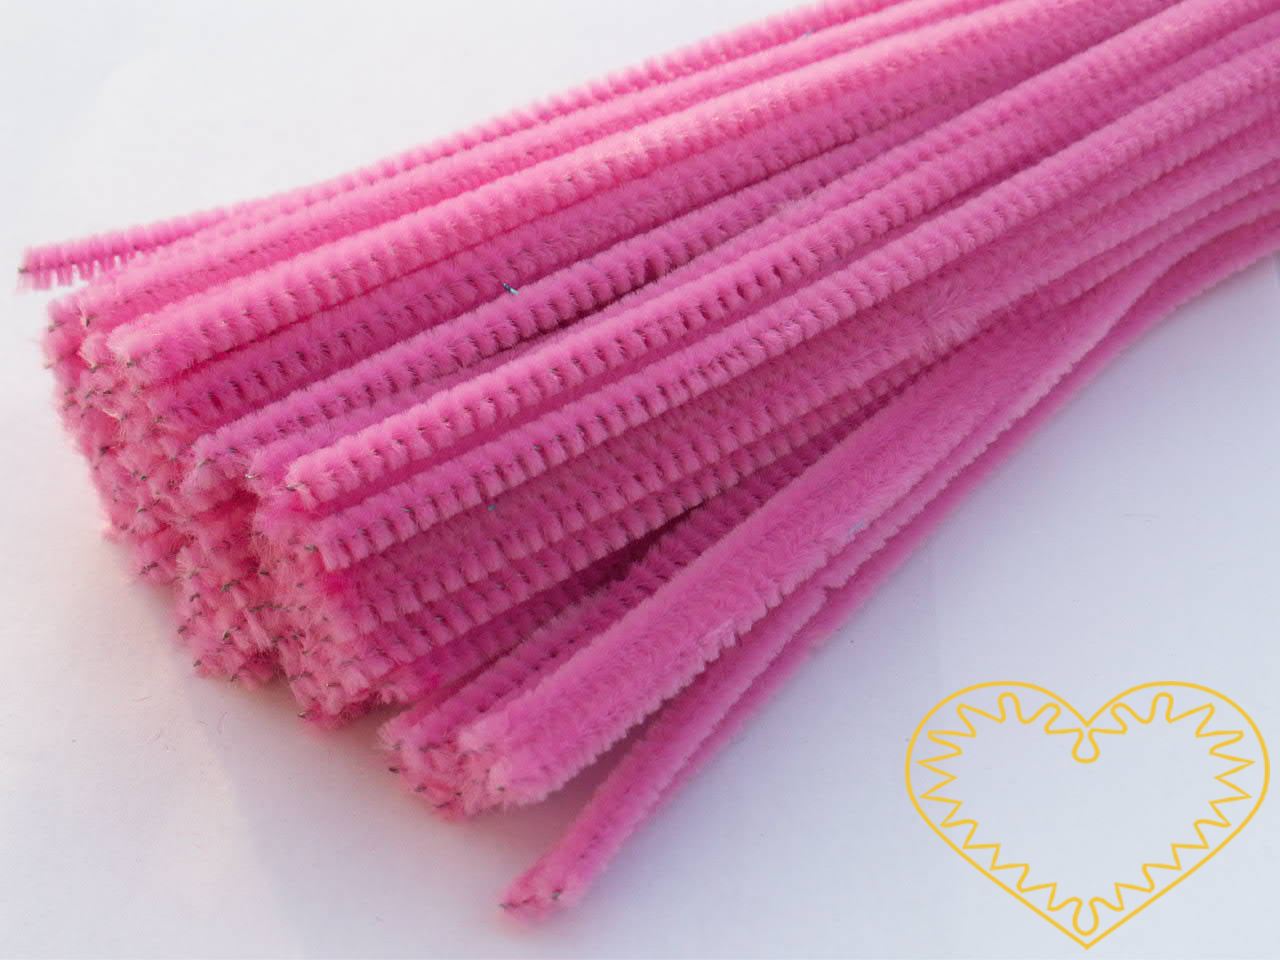 Modelovací chlupatý drátek růžový - délka cca 30 cm. Drátěná tyčinka opletená vláknem se používá k výrobě různých hraček i ozdob. Lze ji všelijak tvarovat, kroutit, splétat, stříhat, kombinovat například s bambulkami, lepit. Drátek skvěle imituje